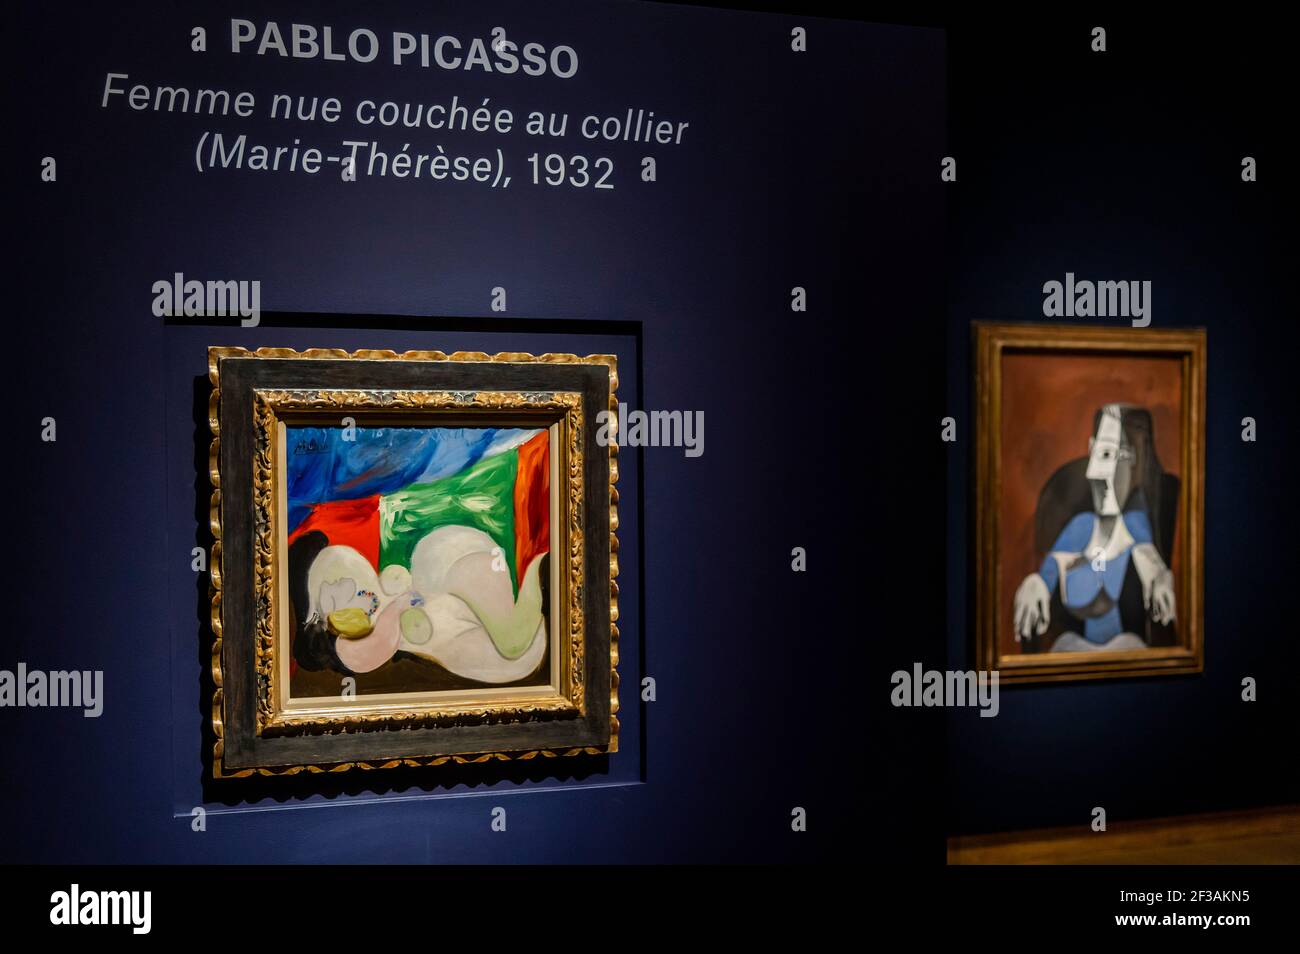 Londres, Royaume-Uni. 16 mars 2021. Pablo Picasso, femme nue couchée au collier (Marie-Thérèse), peint à Boisgeloup le 18 juin 1932, estimation : £9,000,000-15,000,000 avec sa femme assise dans un fauteuil noir (Jacqueline), peint à Mougins les 19 novembre et 18 décembre 1962, estimation : £6,000,000-9,000,000 - derrière des portes fermées : Les préparatifs ont lieu à christie's avant la vente en direct de la soirée artistique du XXe siècle et l'art de la vente surréaliste le 23 mars crédit: Guy Bell/Alay Live News Banque D'Images